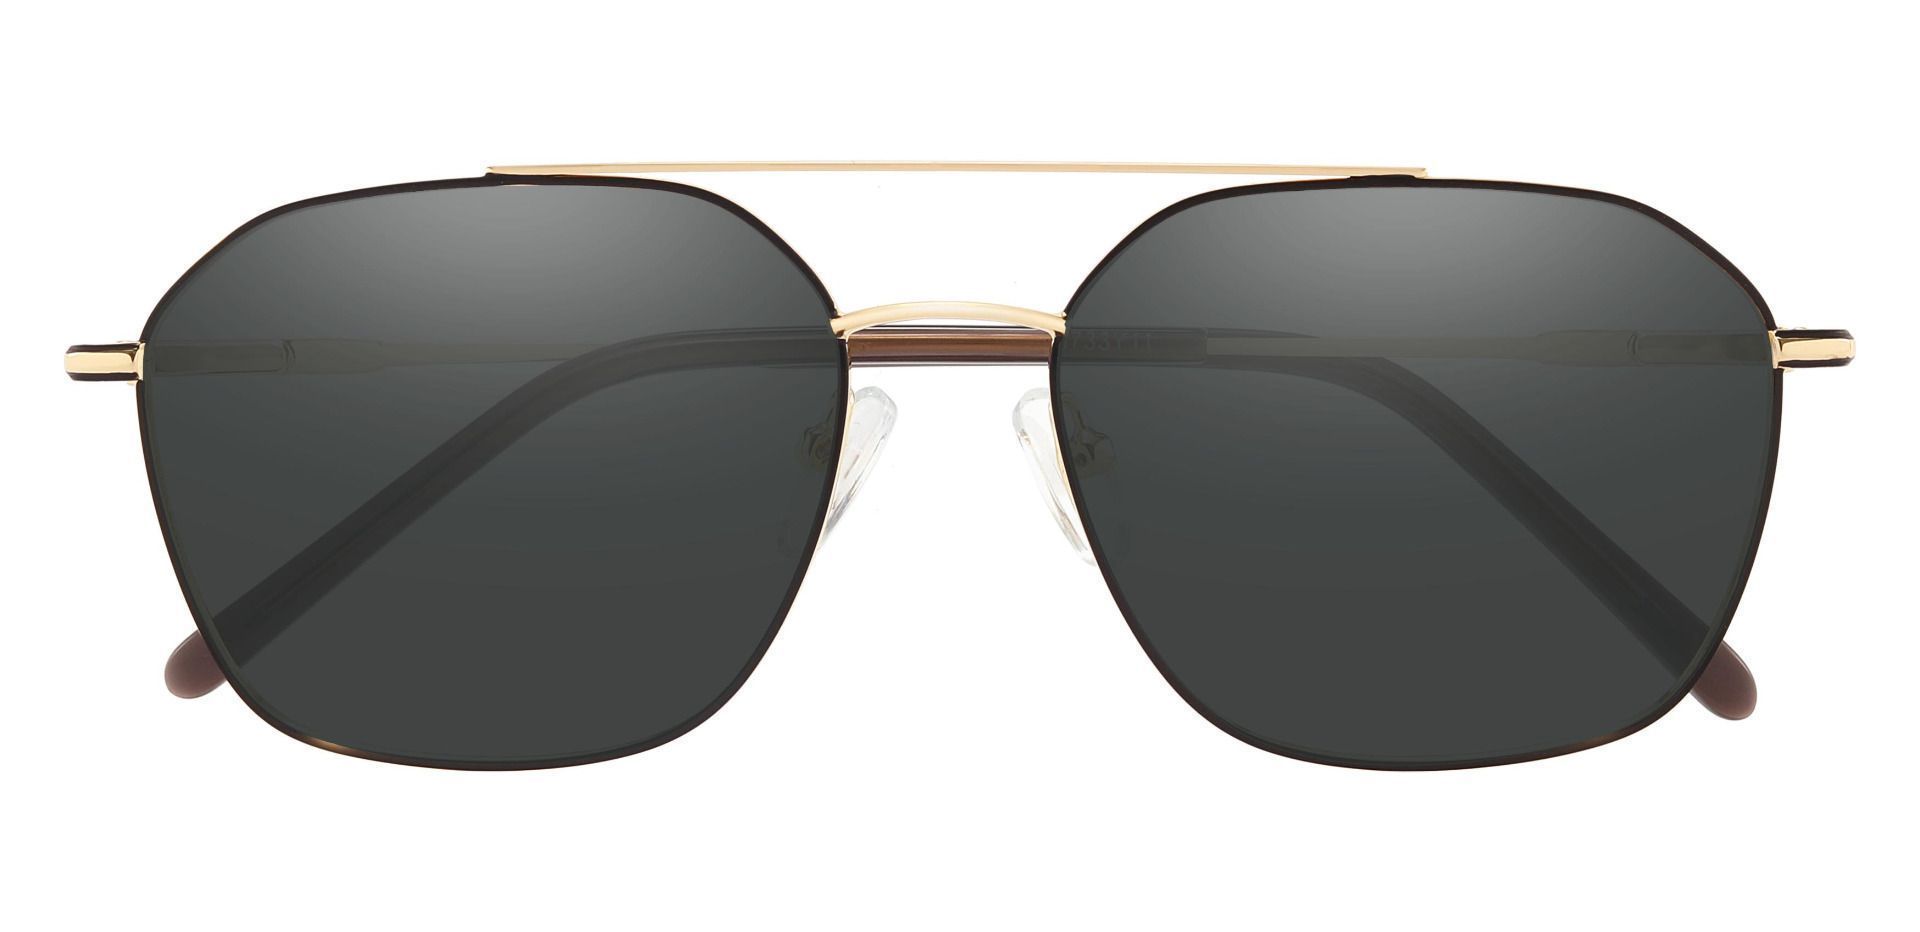 Harvey Aviator Progressive Sunglasses - Gold Frame With Gray Lenses